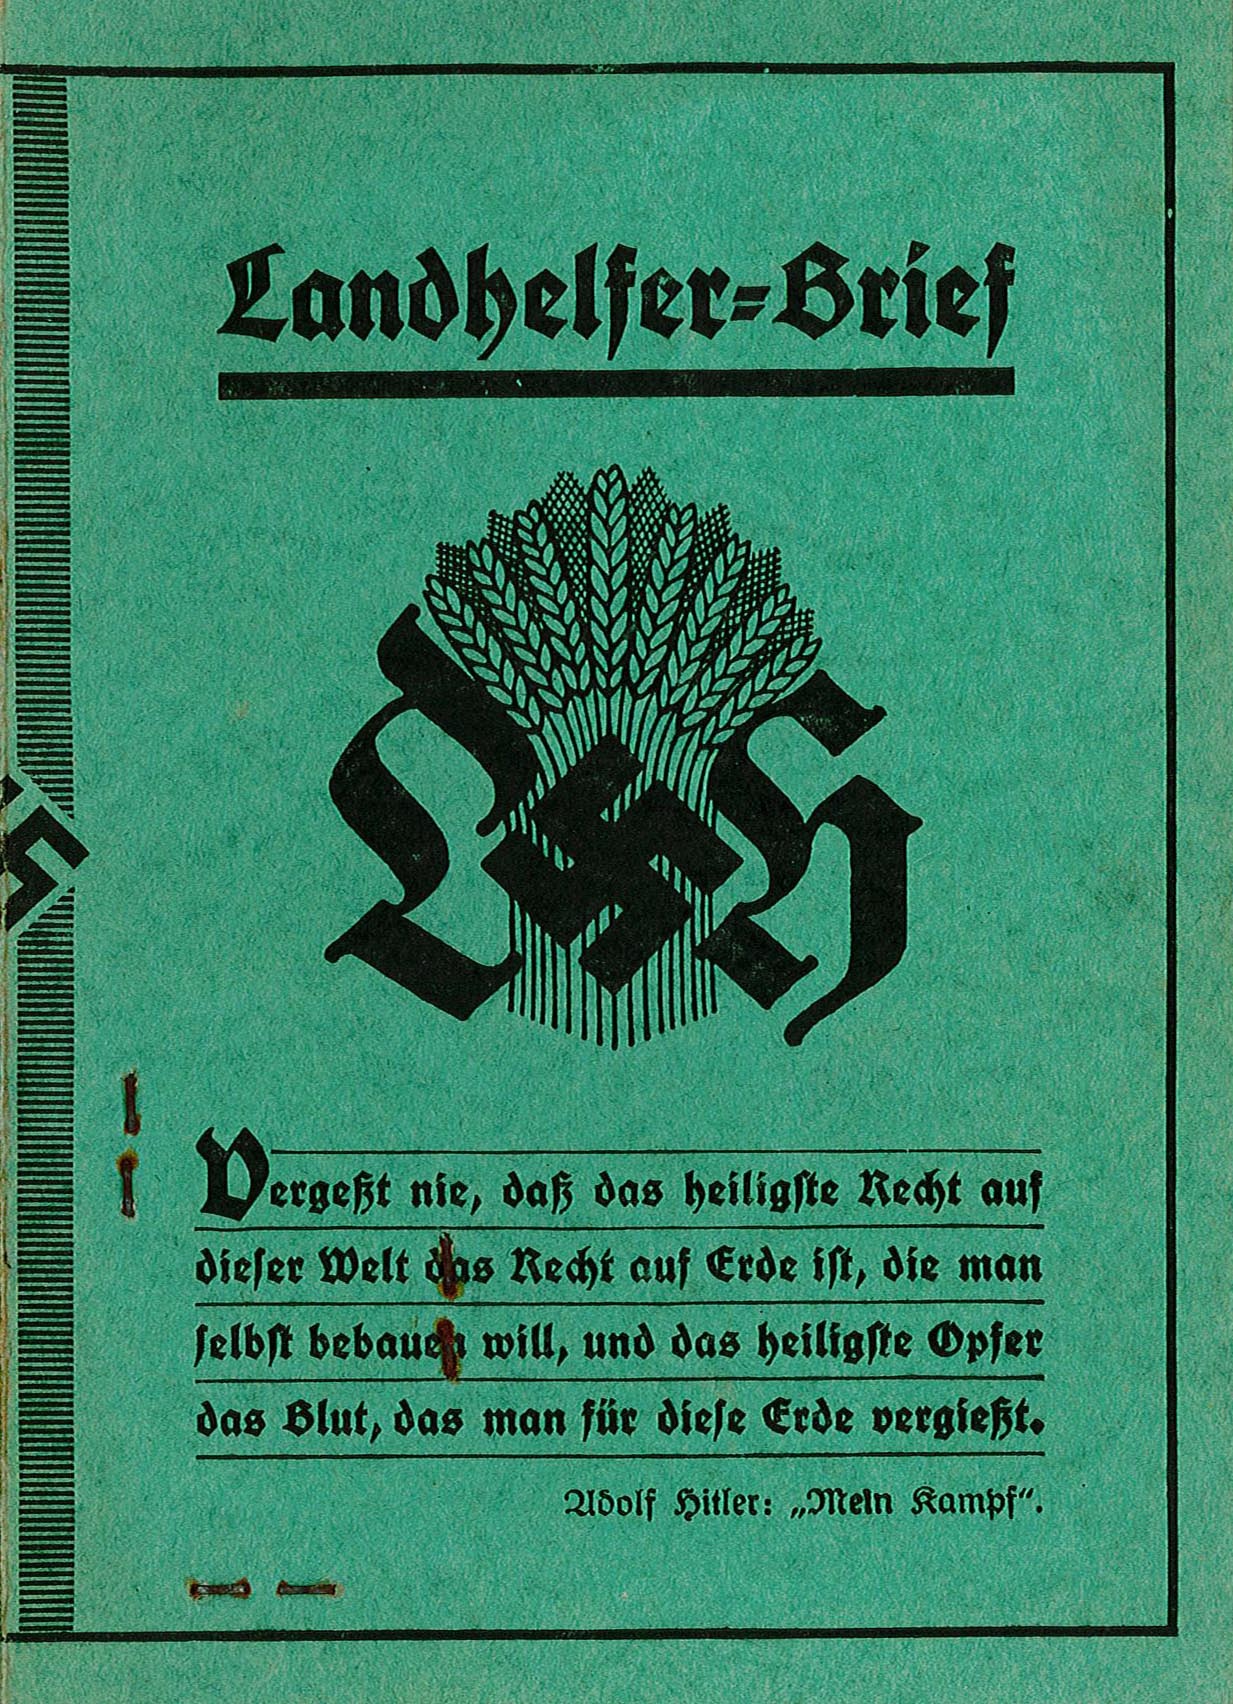 Landhelfer-Brief für Marianne Rappin, 1934 (Museum Wolmirstedt RR-F)